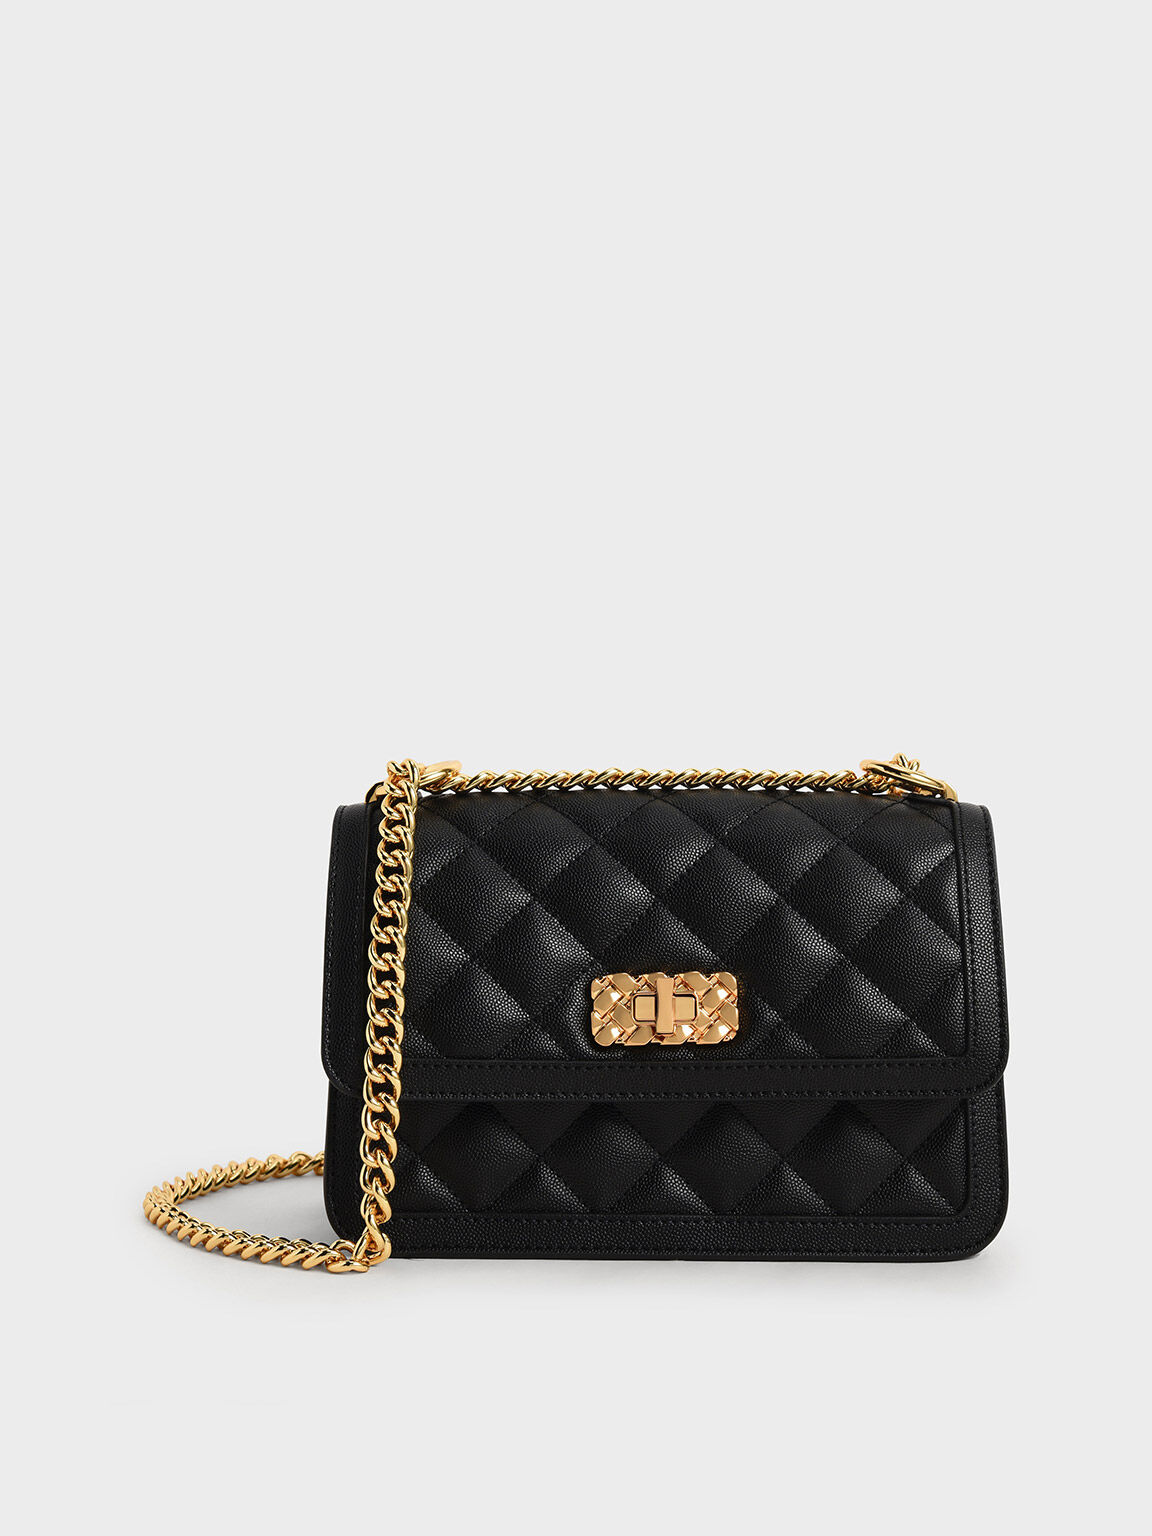 Quilted weekend bag - Black - Ladies | H&M IN